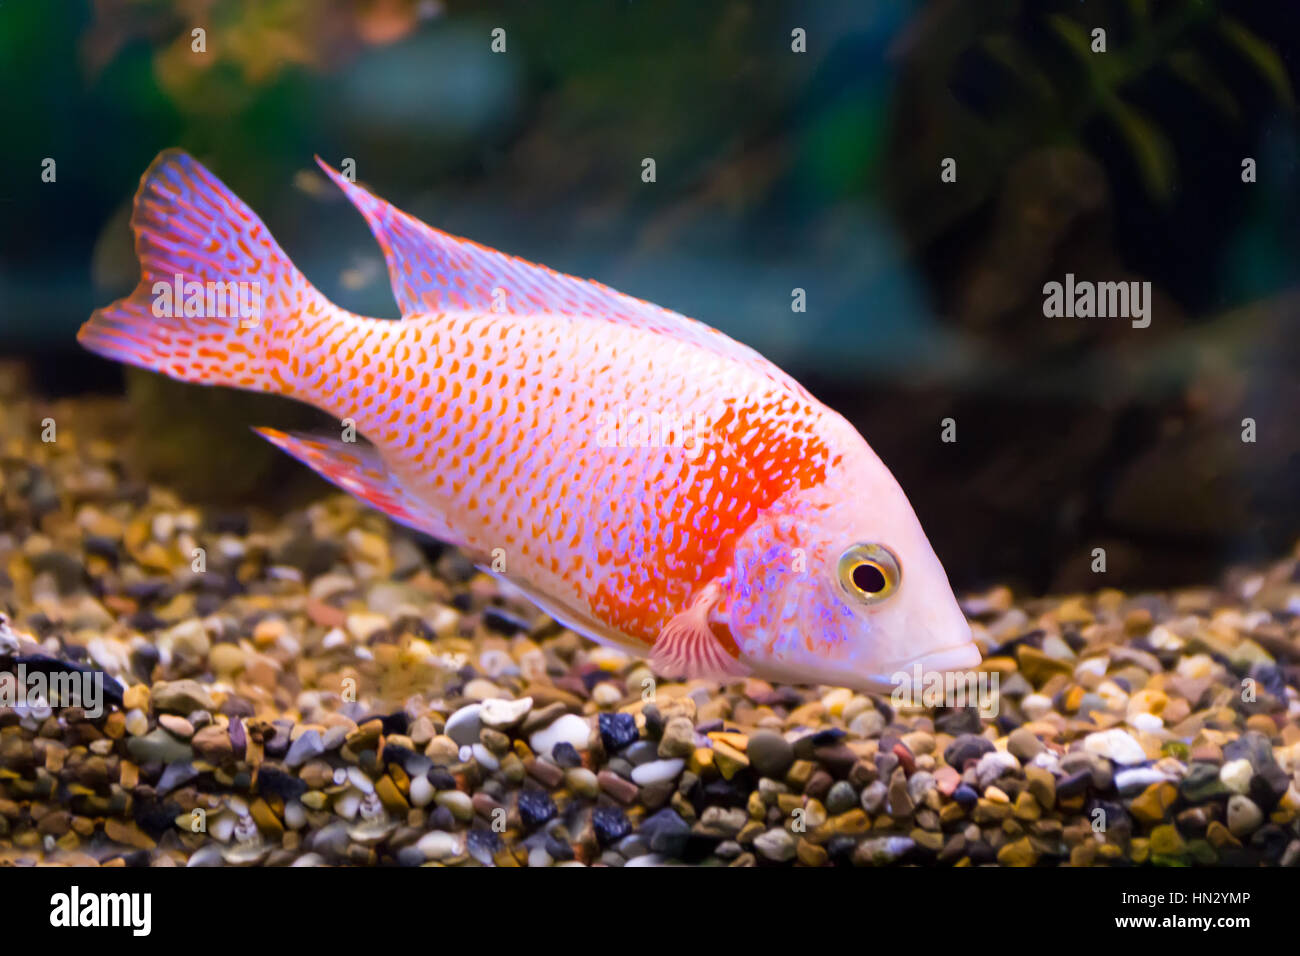 Image of red aulonocara fish in aquarium Stock Photo